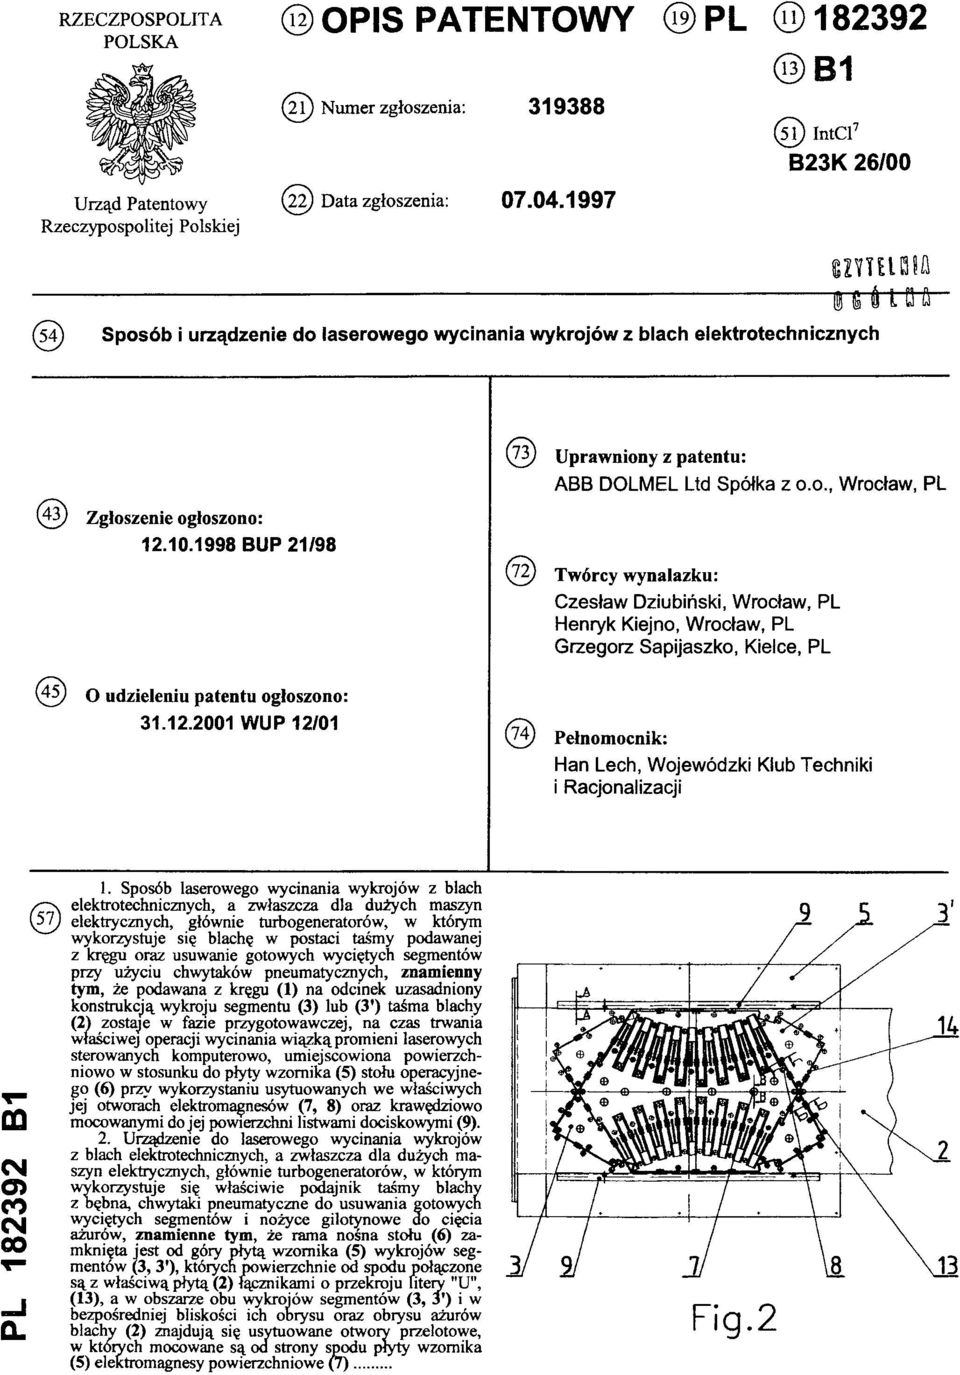 1998 BUP 21/98 (45) O udzieleniu patentu og